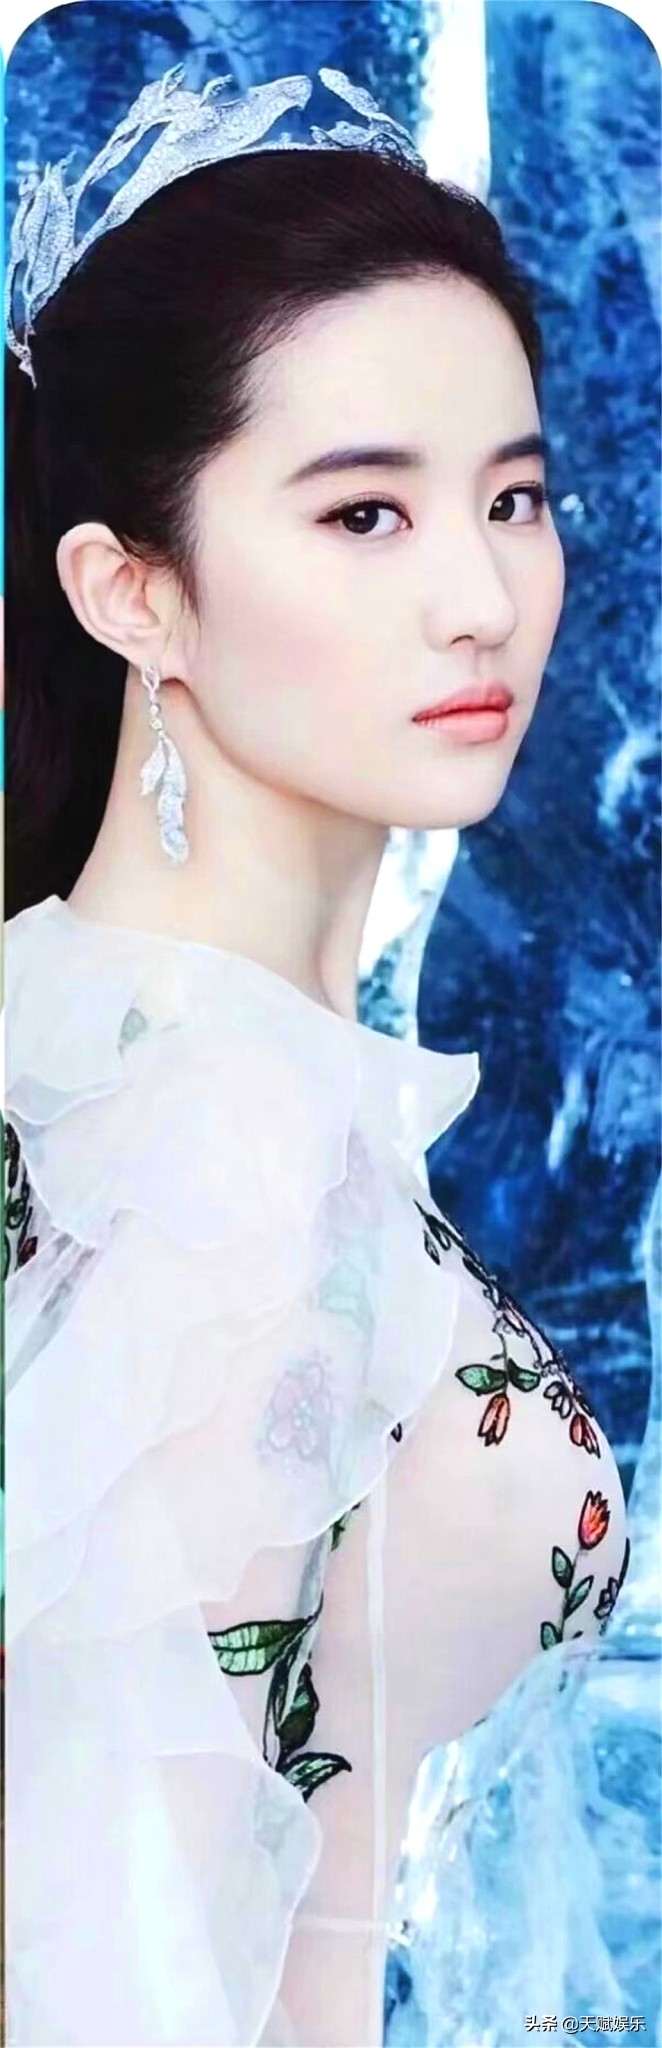 影视女演员、歌手刘亦菲夏季穿搭相片11-20